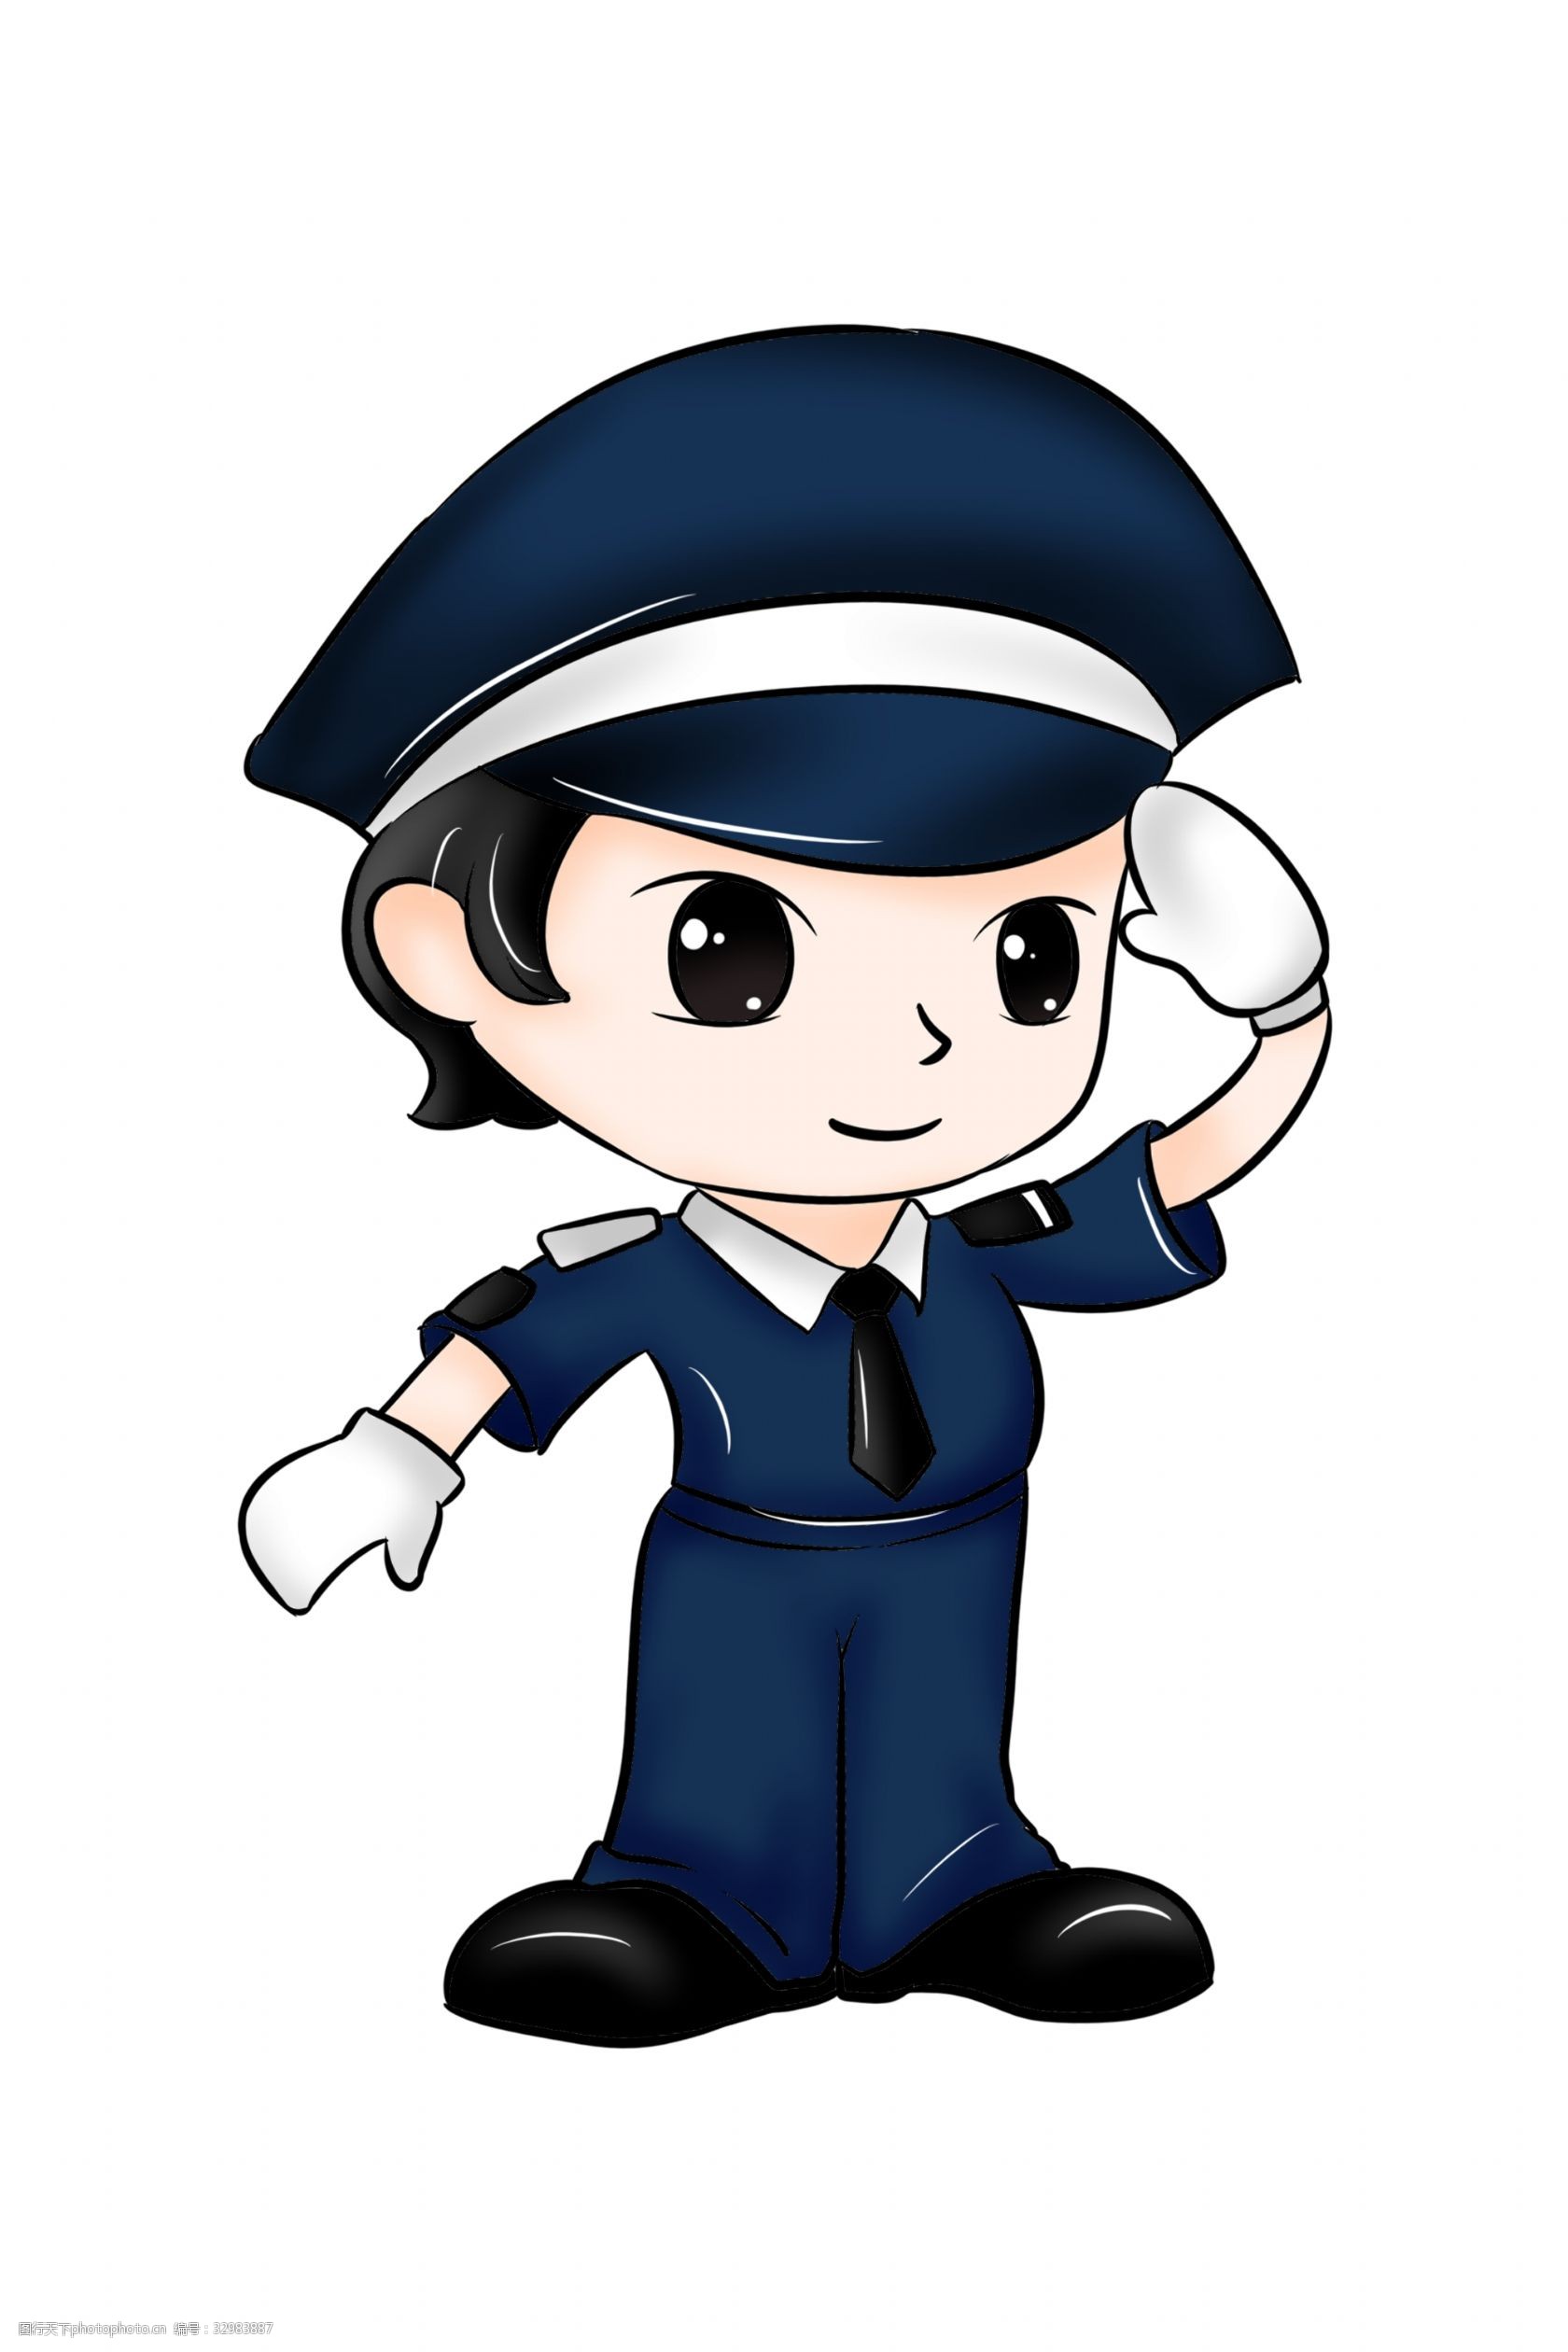 关键词:警察职业卡通插画 卡通插画 警察插画 职业插画 警察工作 公安